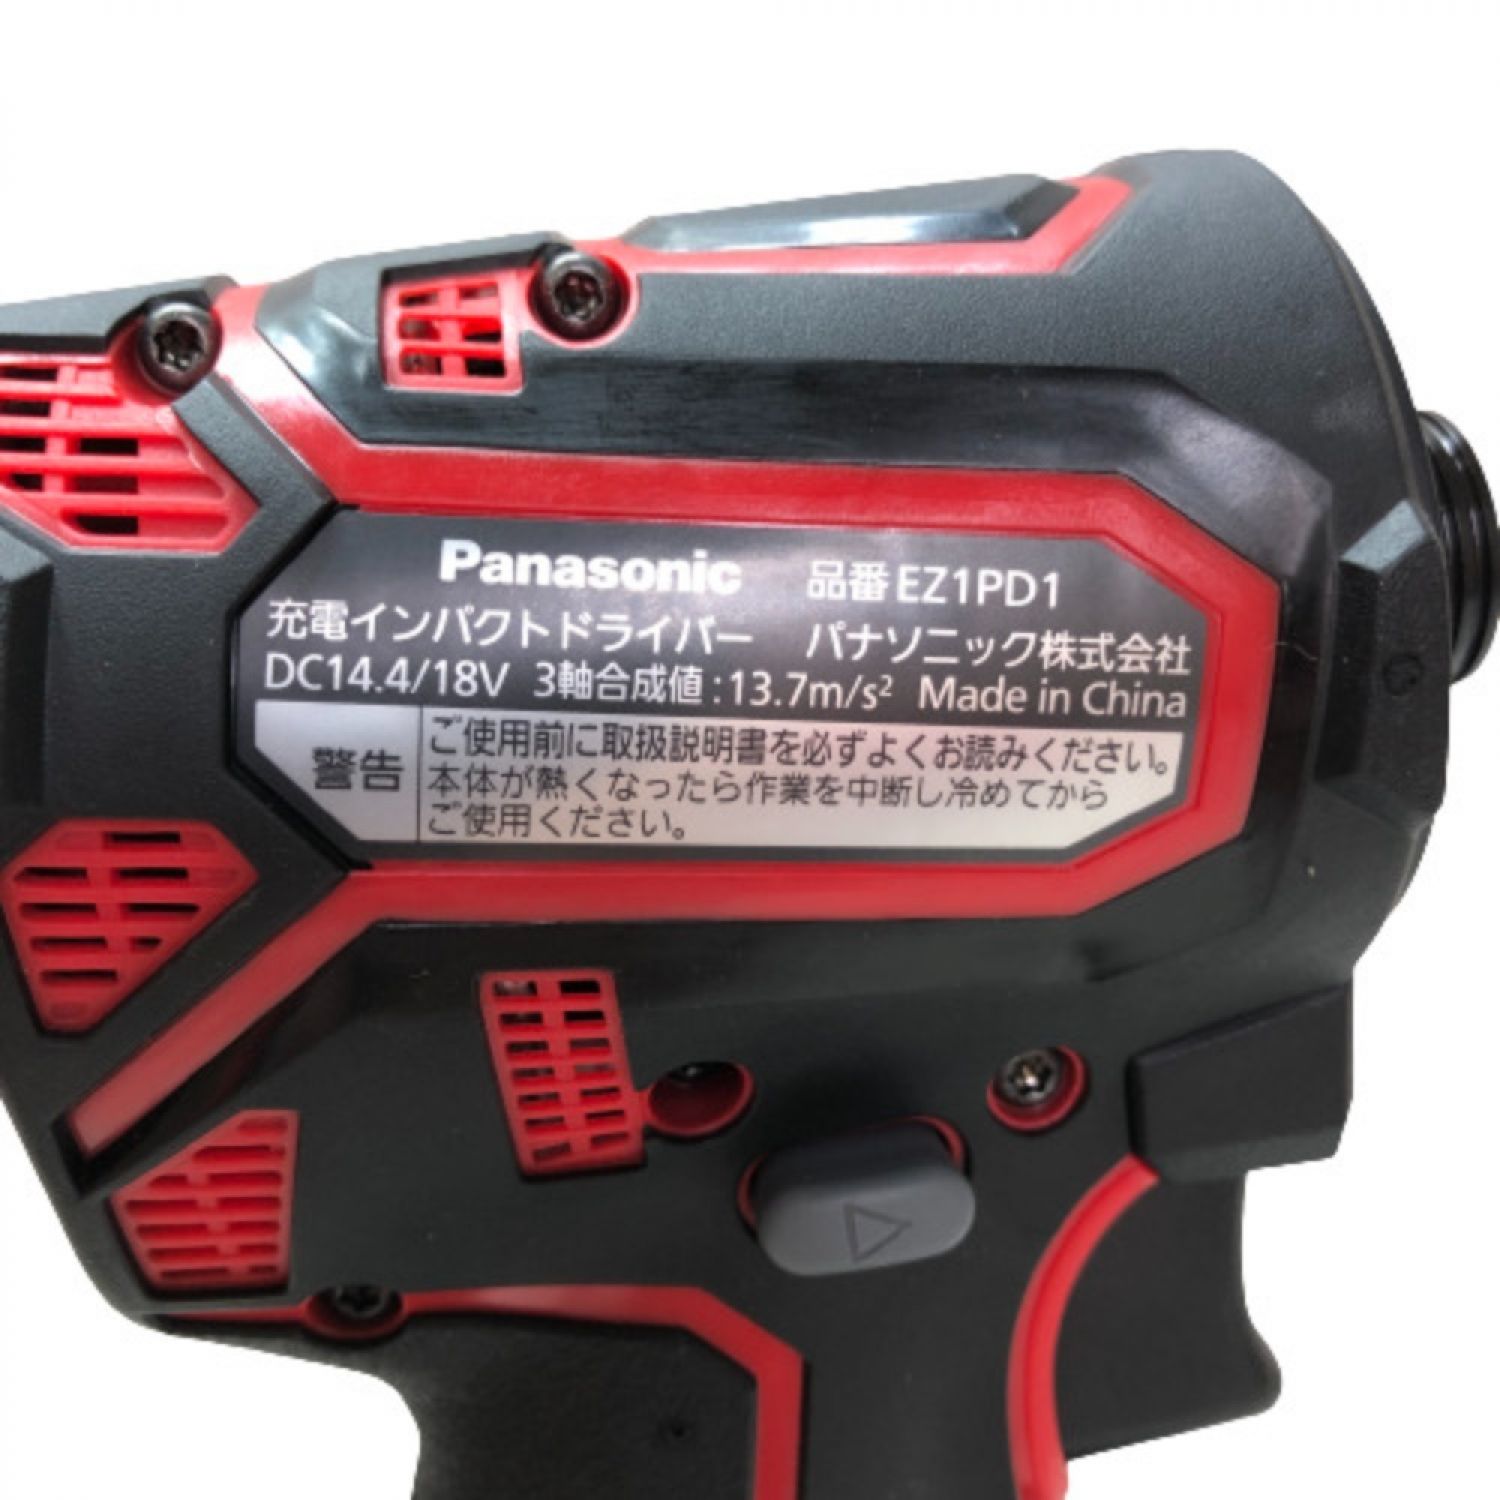 ◇◇Panasonic パナソニック 充電インパクトドライバ EZ1PD1 ブラック